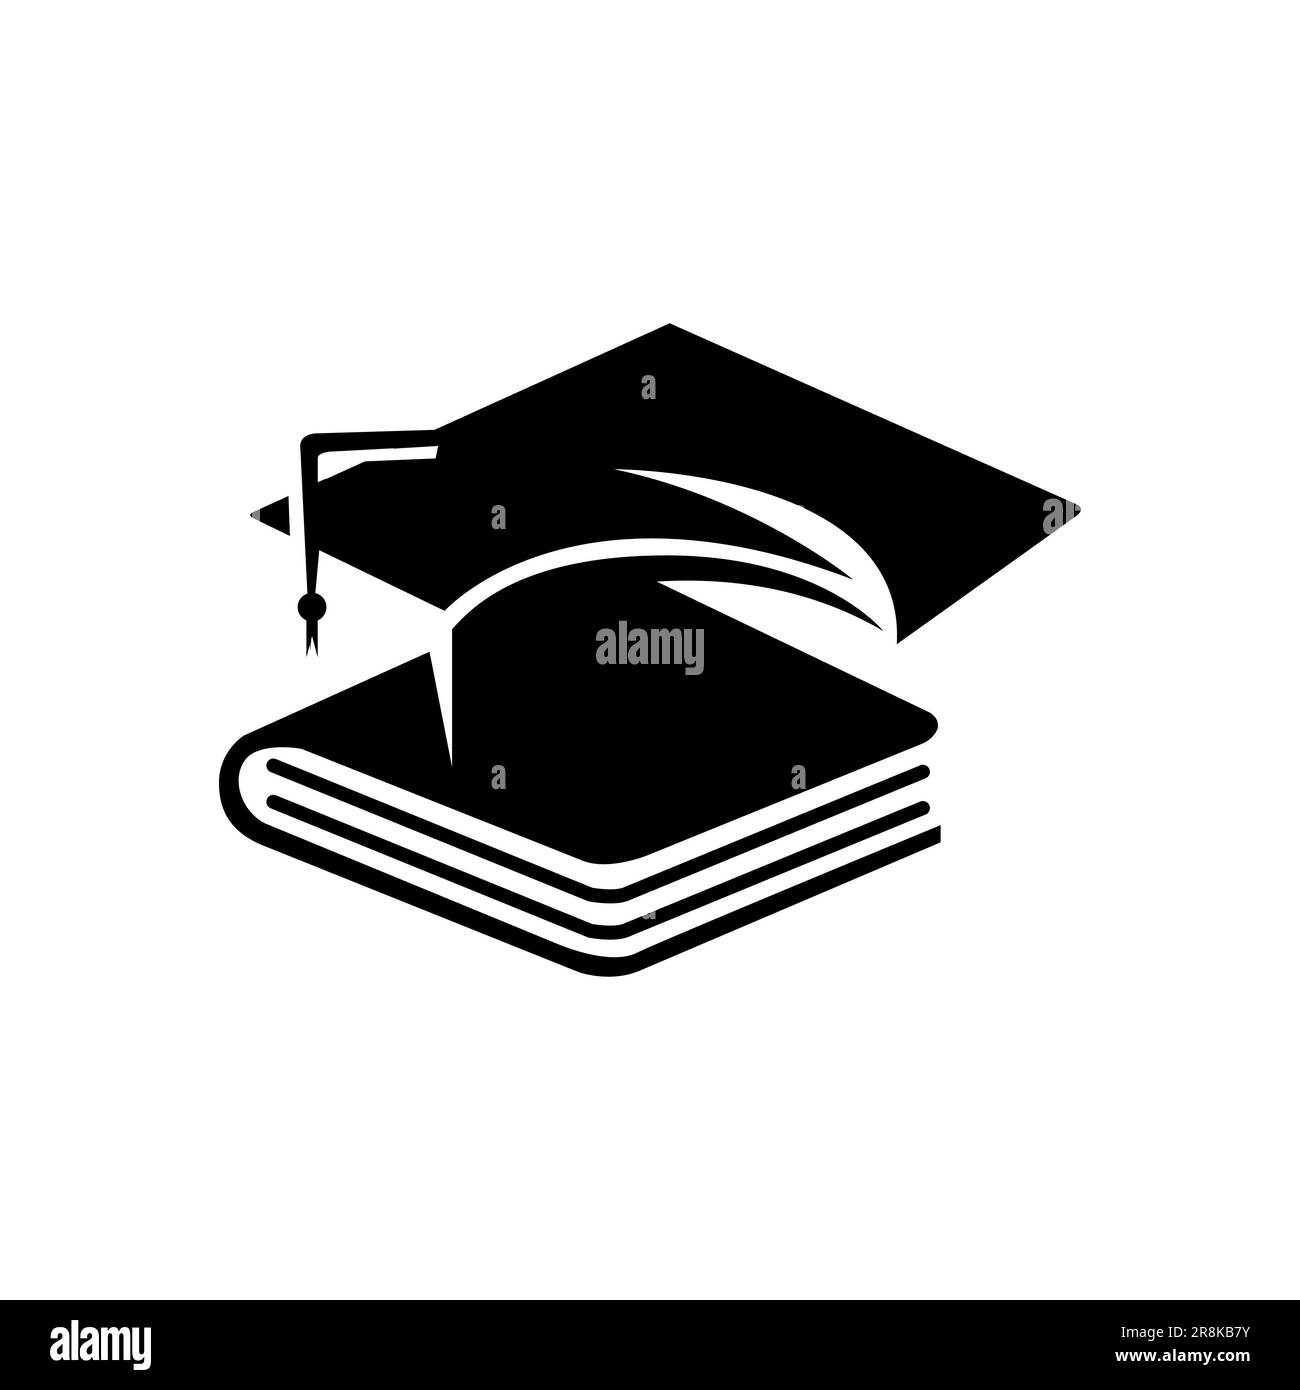 College, tappo di laurea, campus, design del logo Education con illustrazione vettoriale grafica del libro. Illustrazione Vettoriale